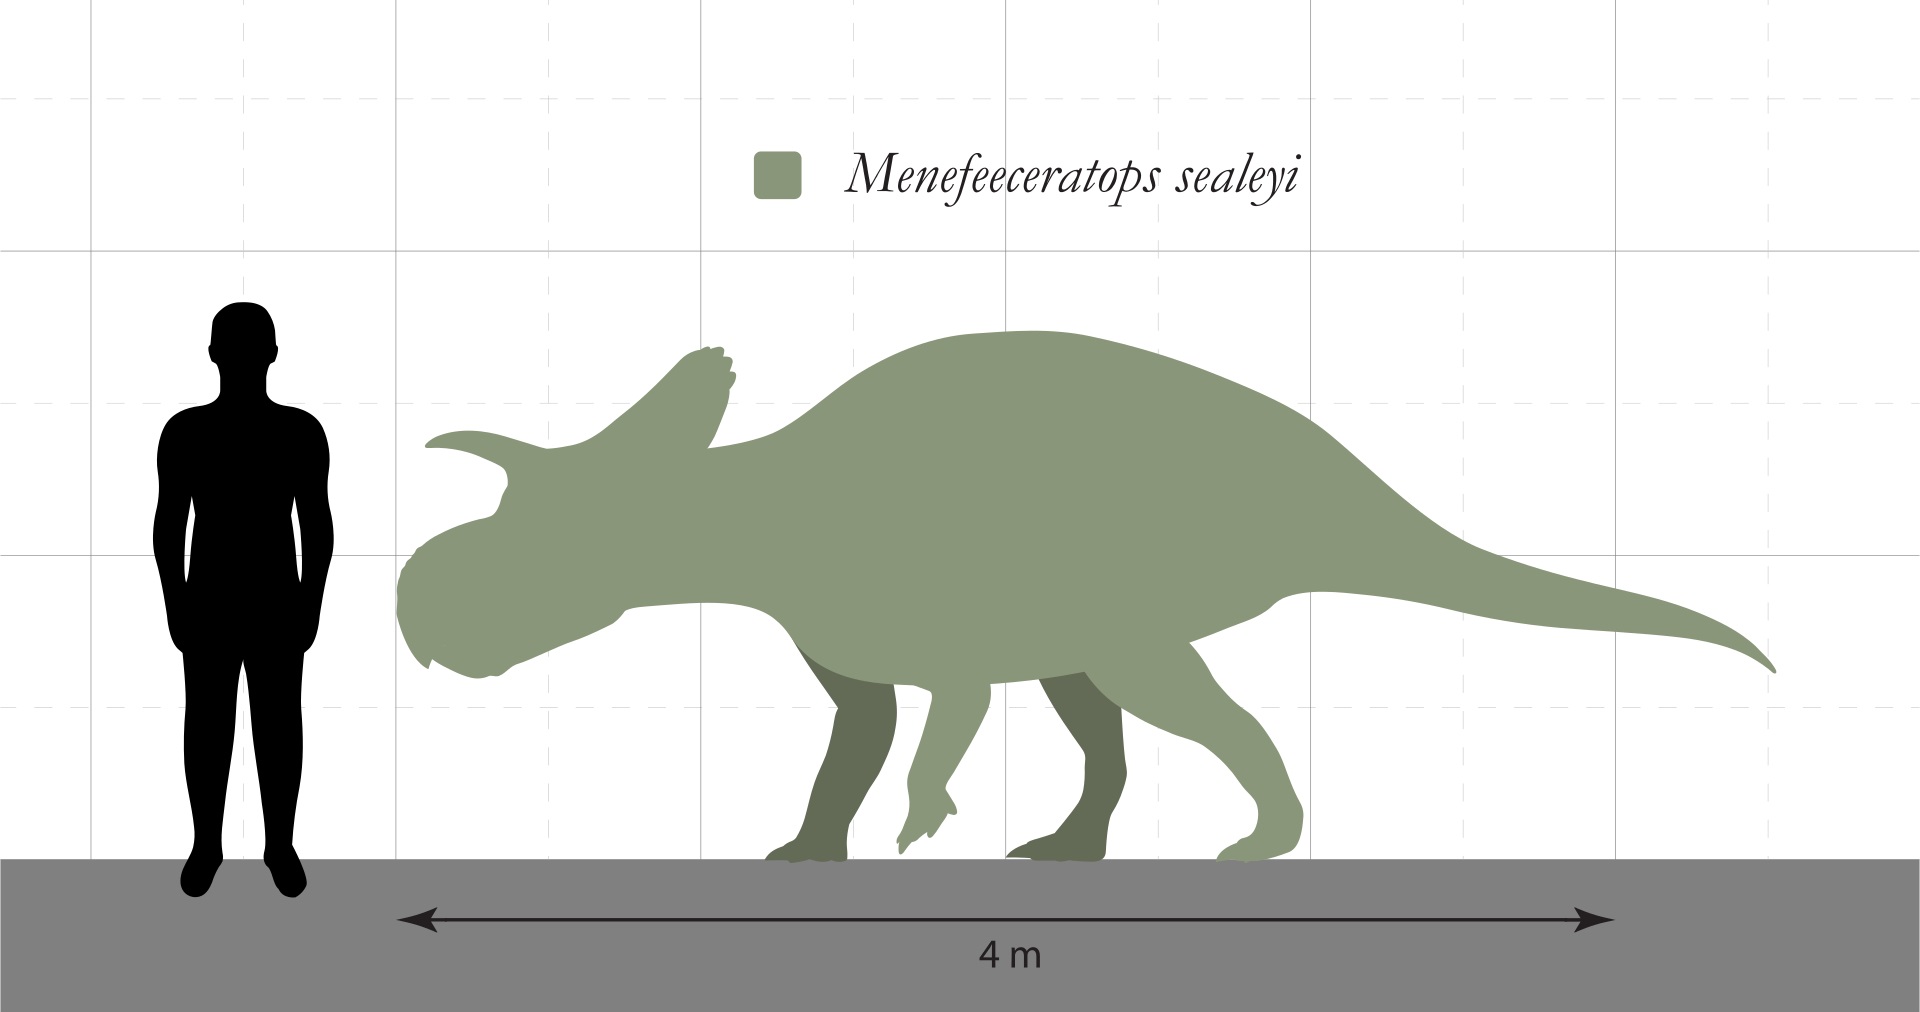 Silueta rohatého dinosaura druhu Menefeeceratops sealeyi, formálně popsaného v loňském roce ze sedimentů geologického souvrství Menefee na území amerického státu Nové Mexiko. Při stáří 83,5 až 80 milionů let se jedná o potenciálně nejstaršího známého